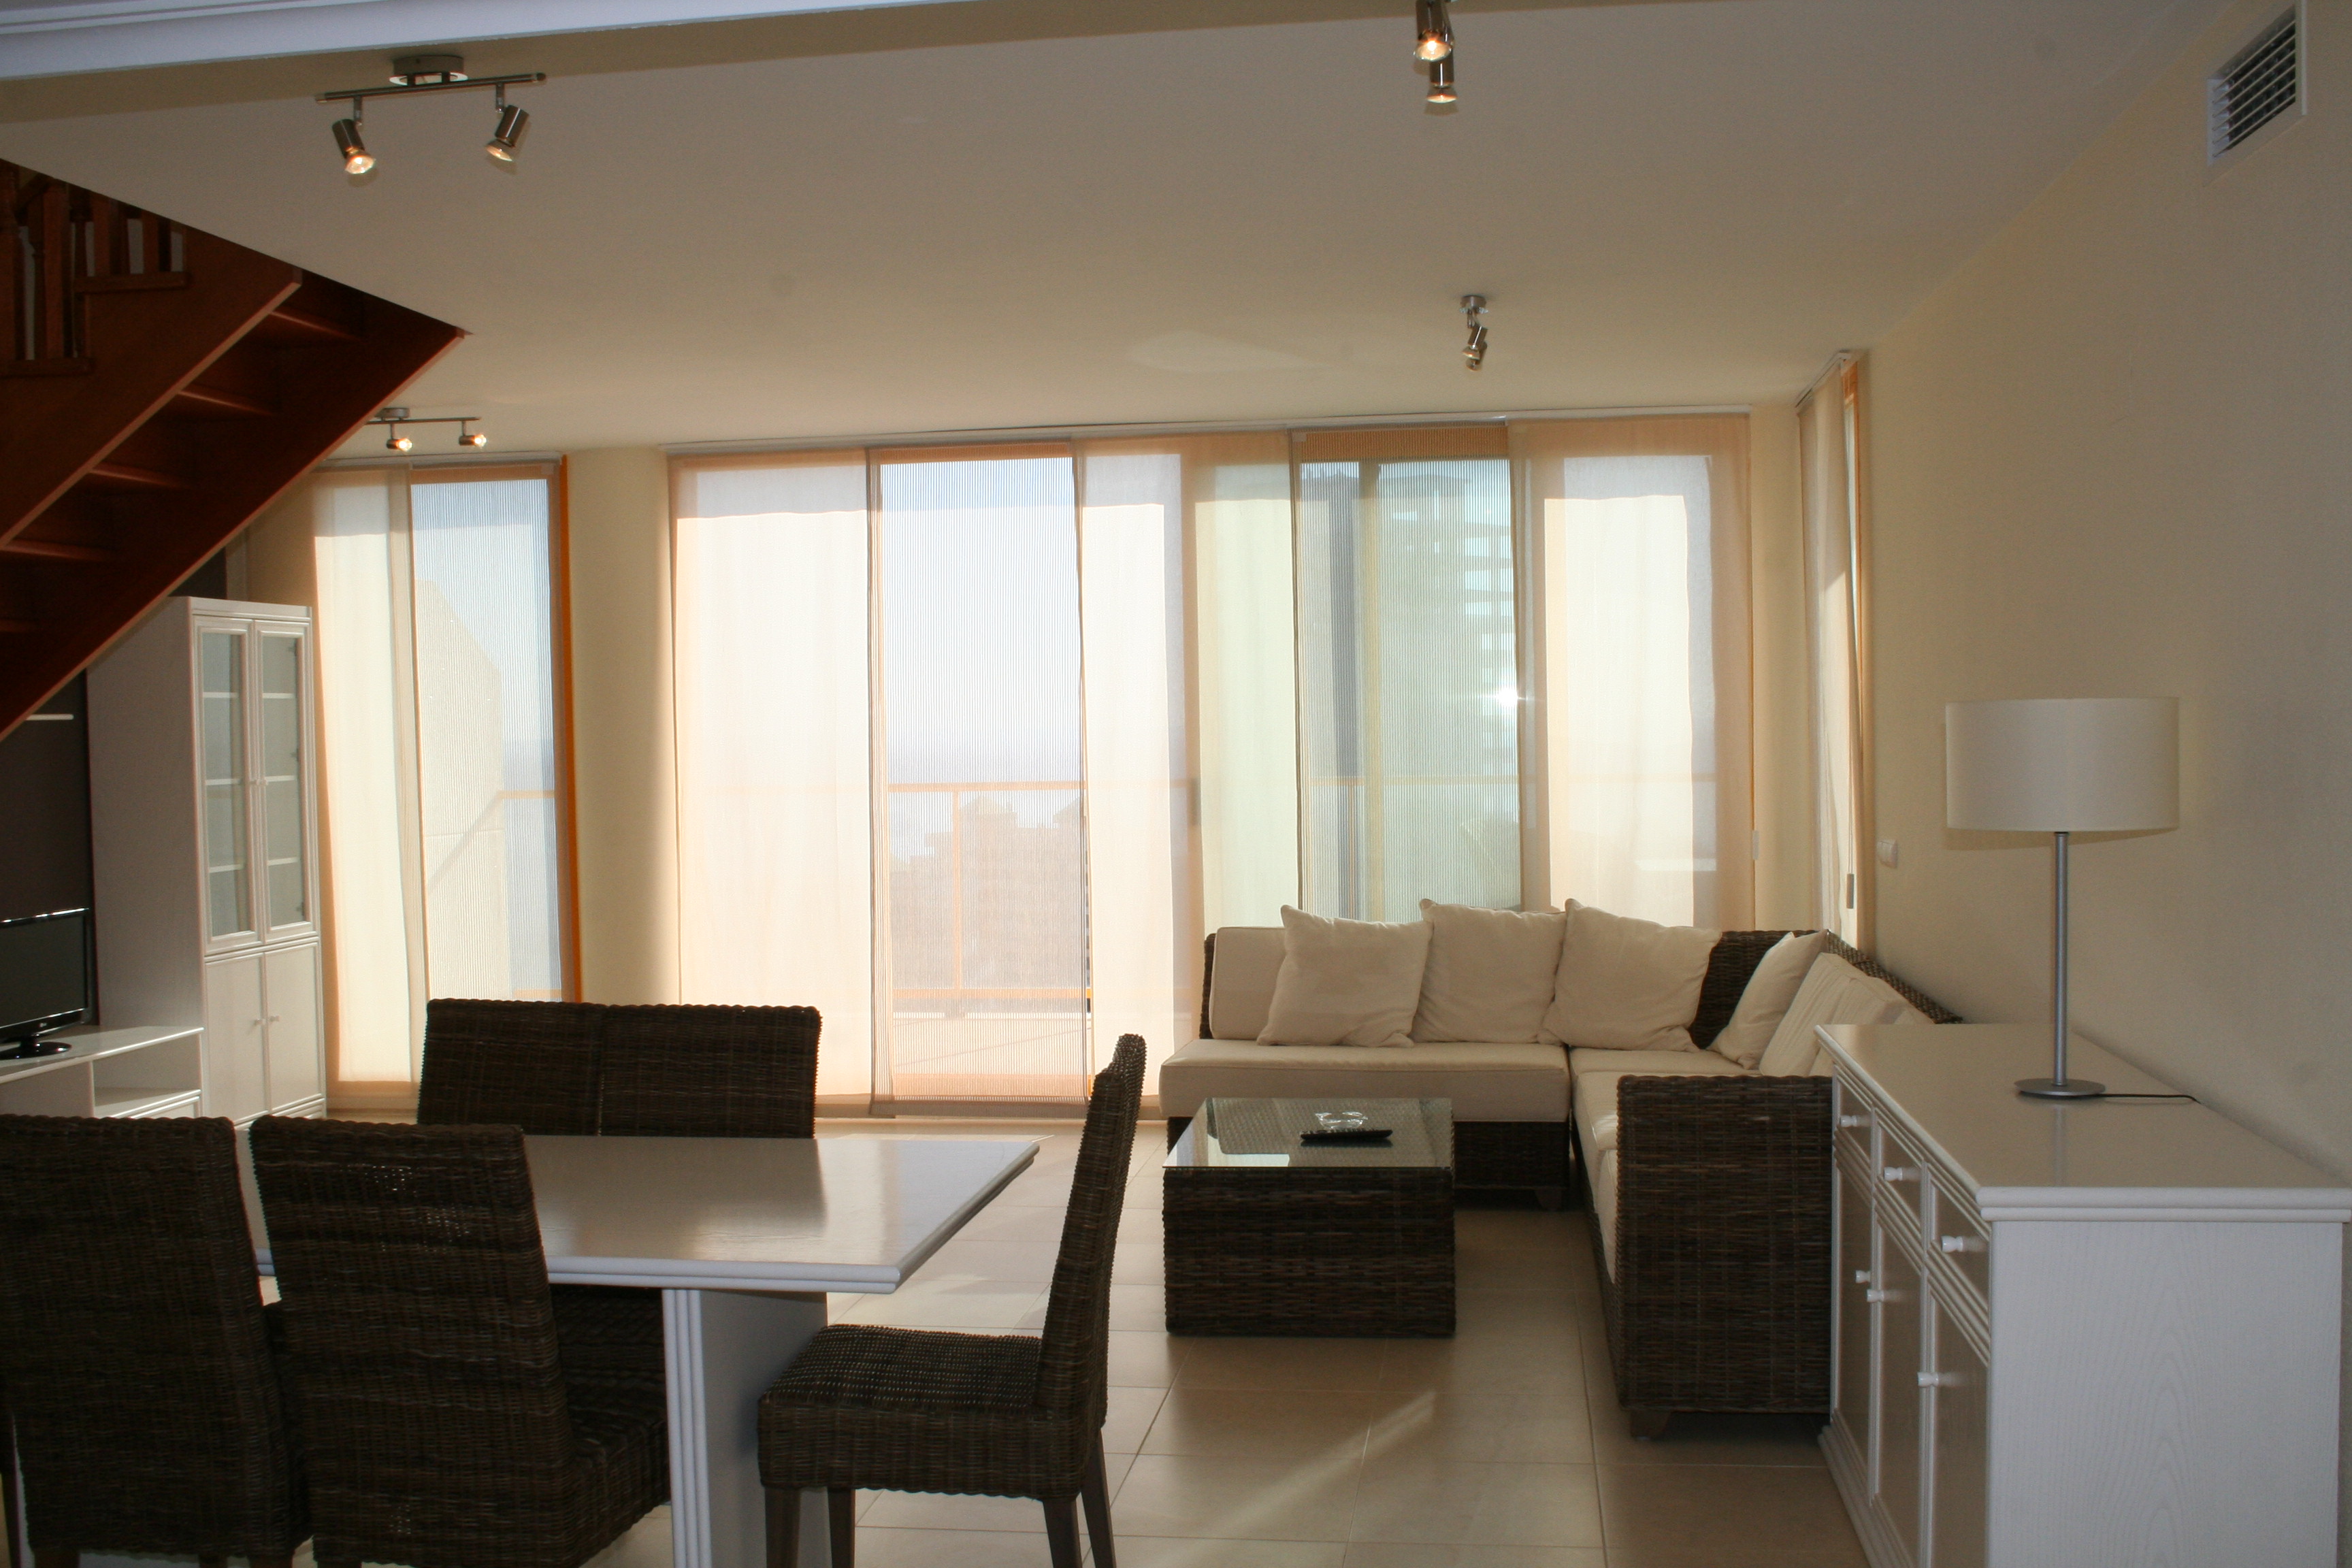 Duplex penthouse te koop in Calpe met uitzicht op zee